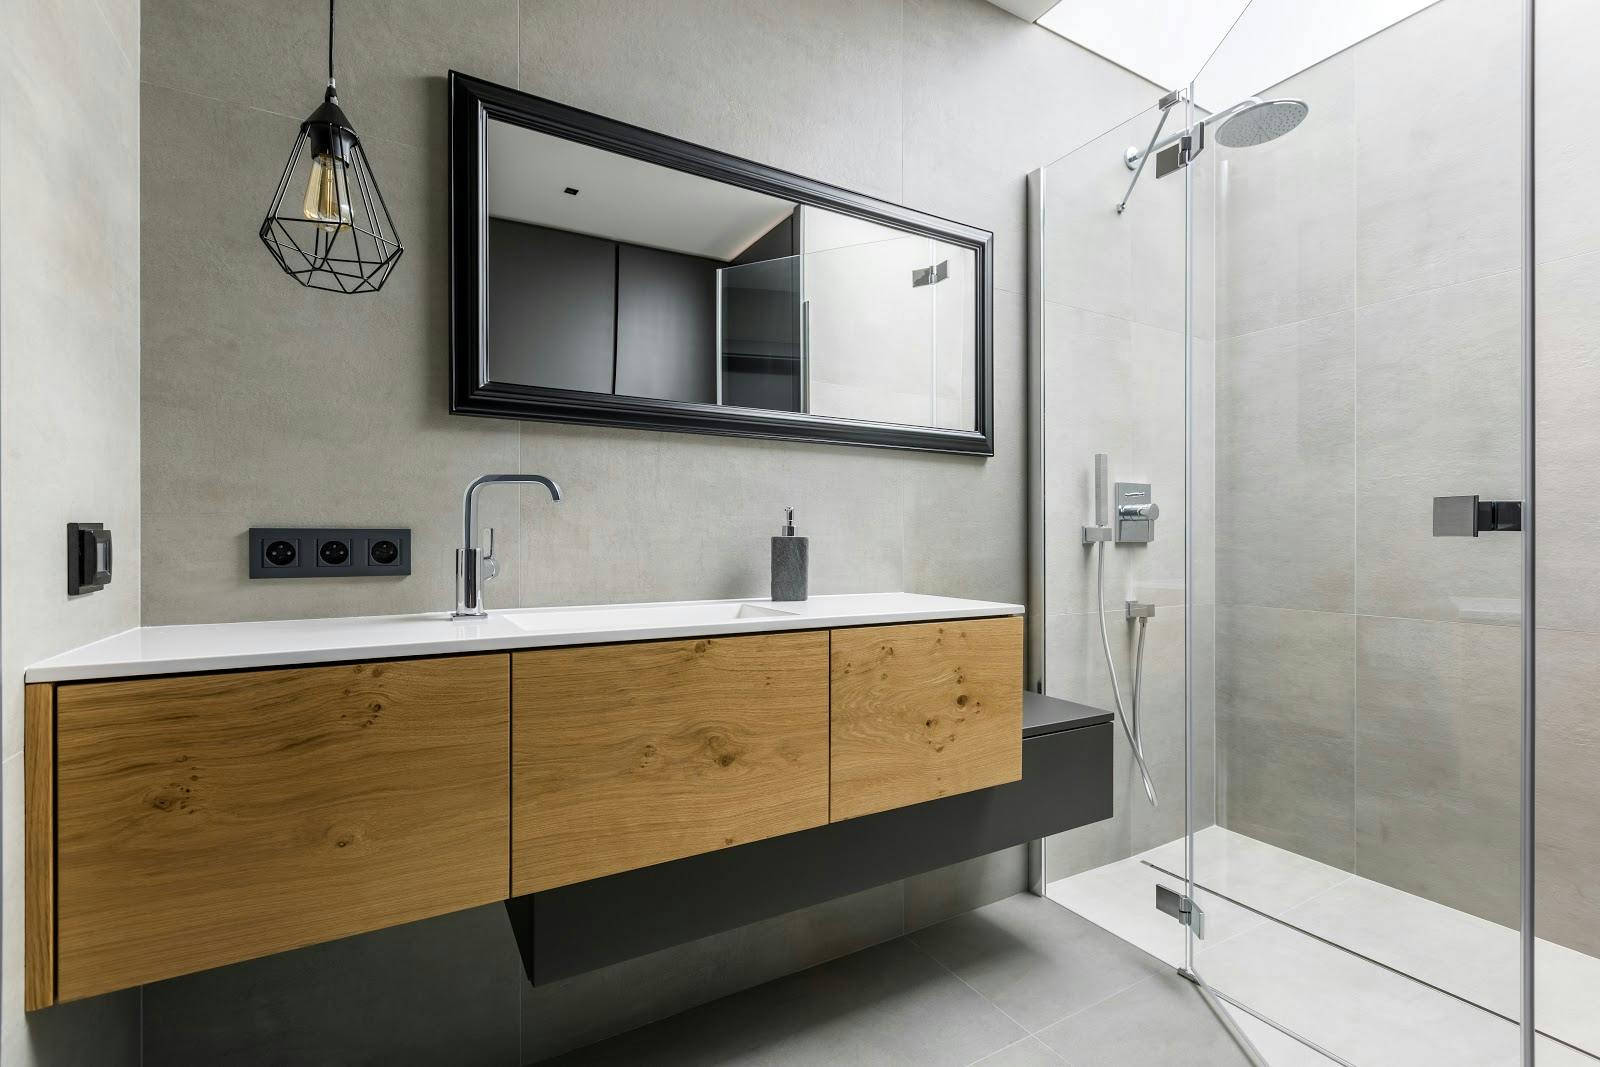 Diseño en el cuarto de baño: ideas para que sustituir la bañera